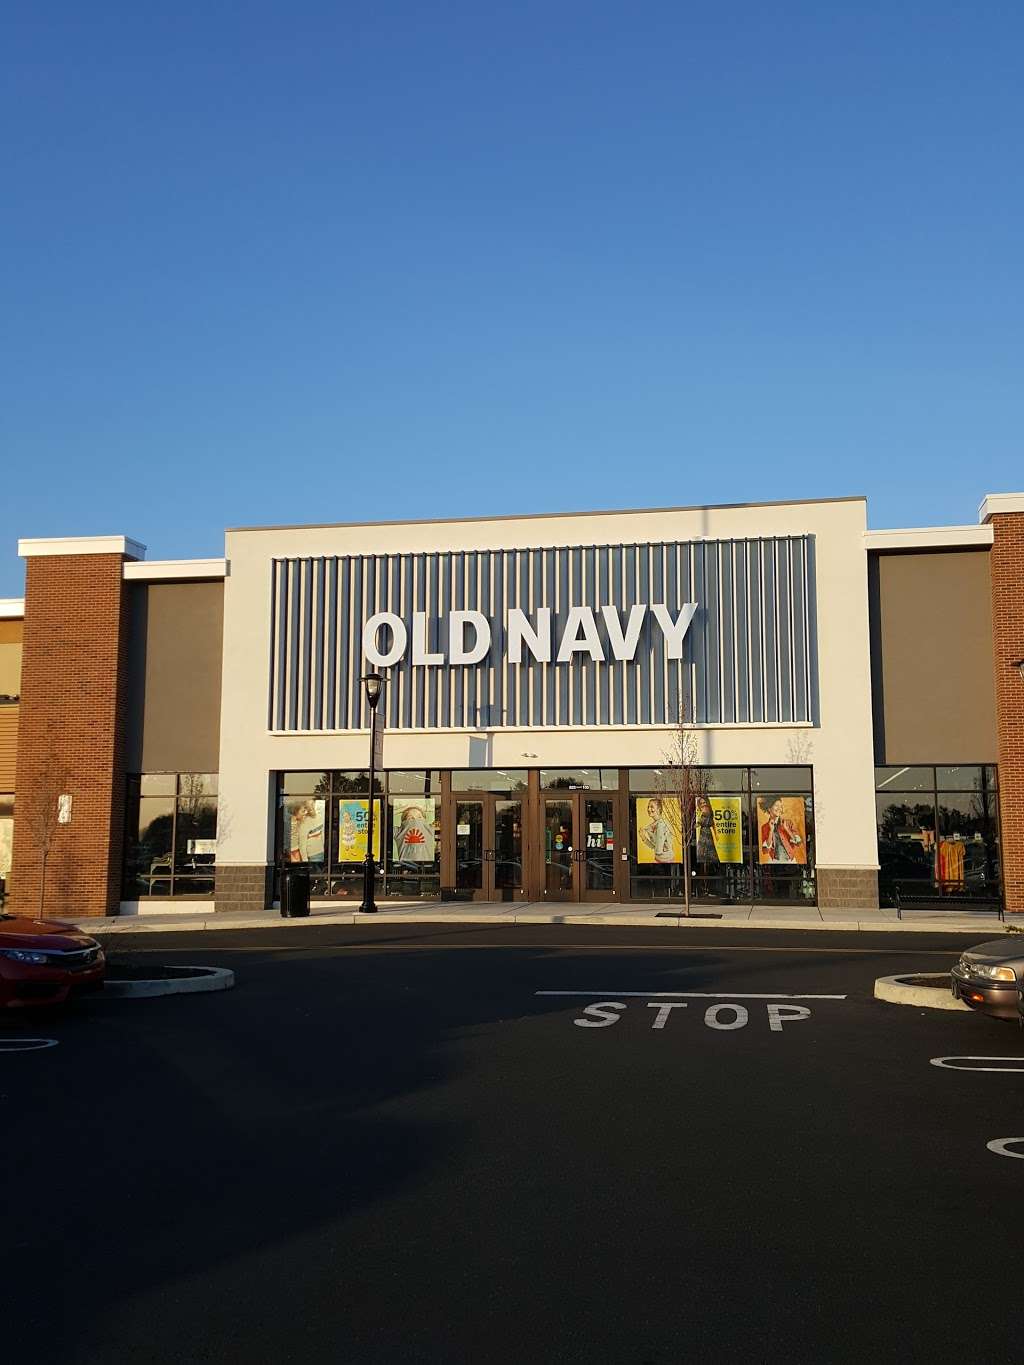 Old Navy | 833 N Krocks Rd, Allentown, PA 18106 | Phone: (610) 530-1540